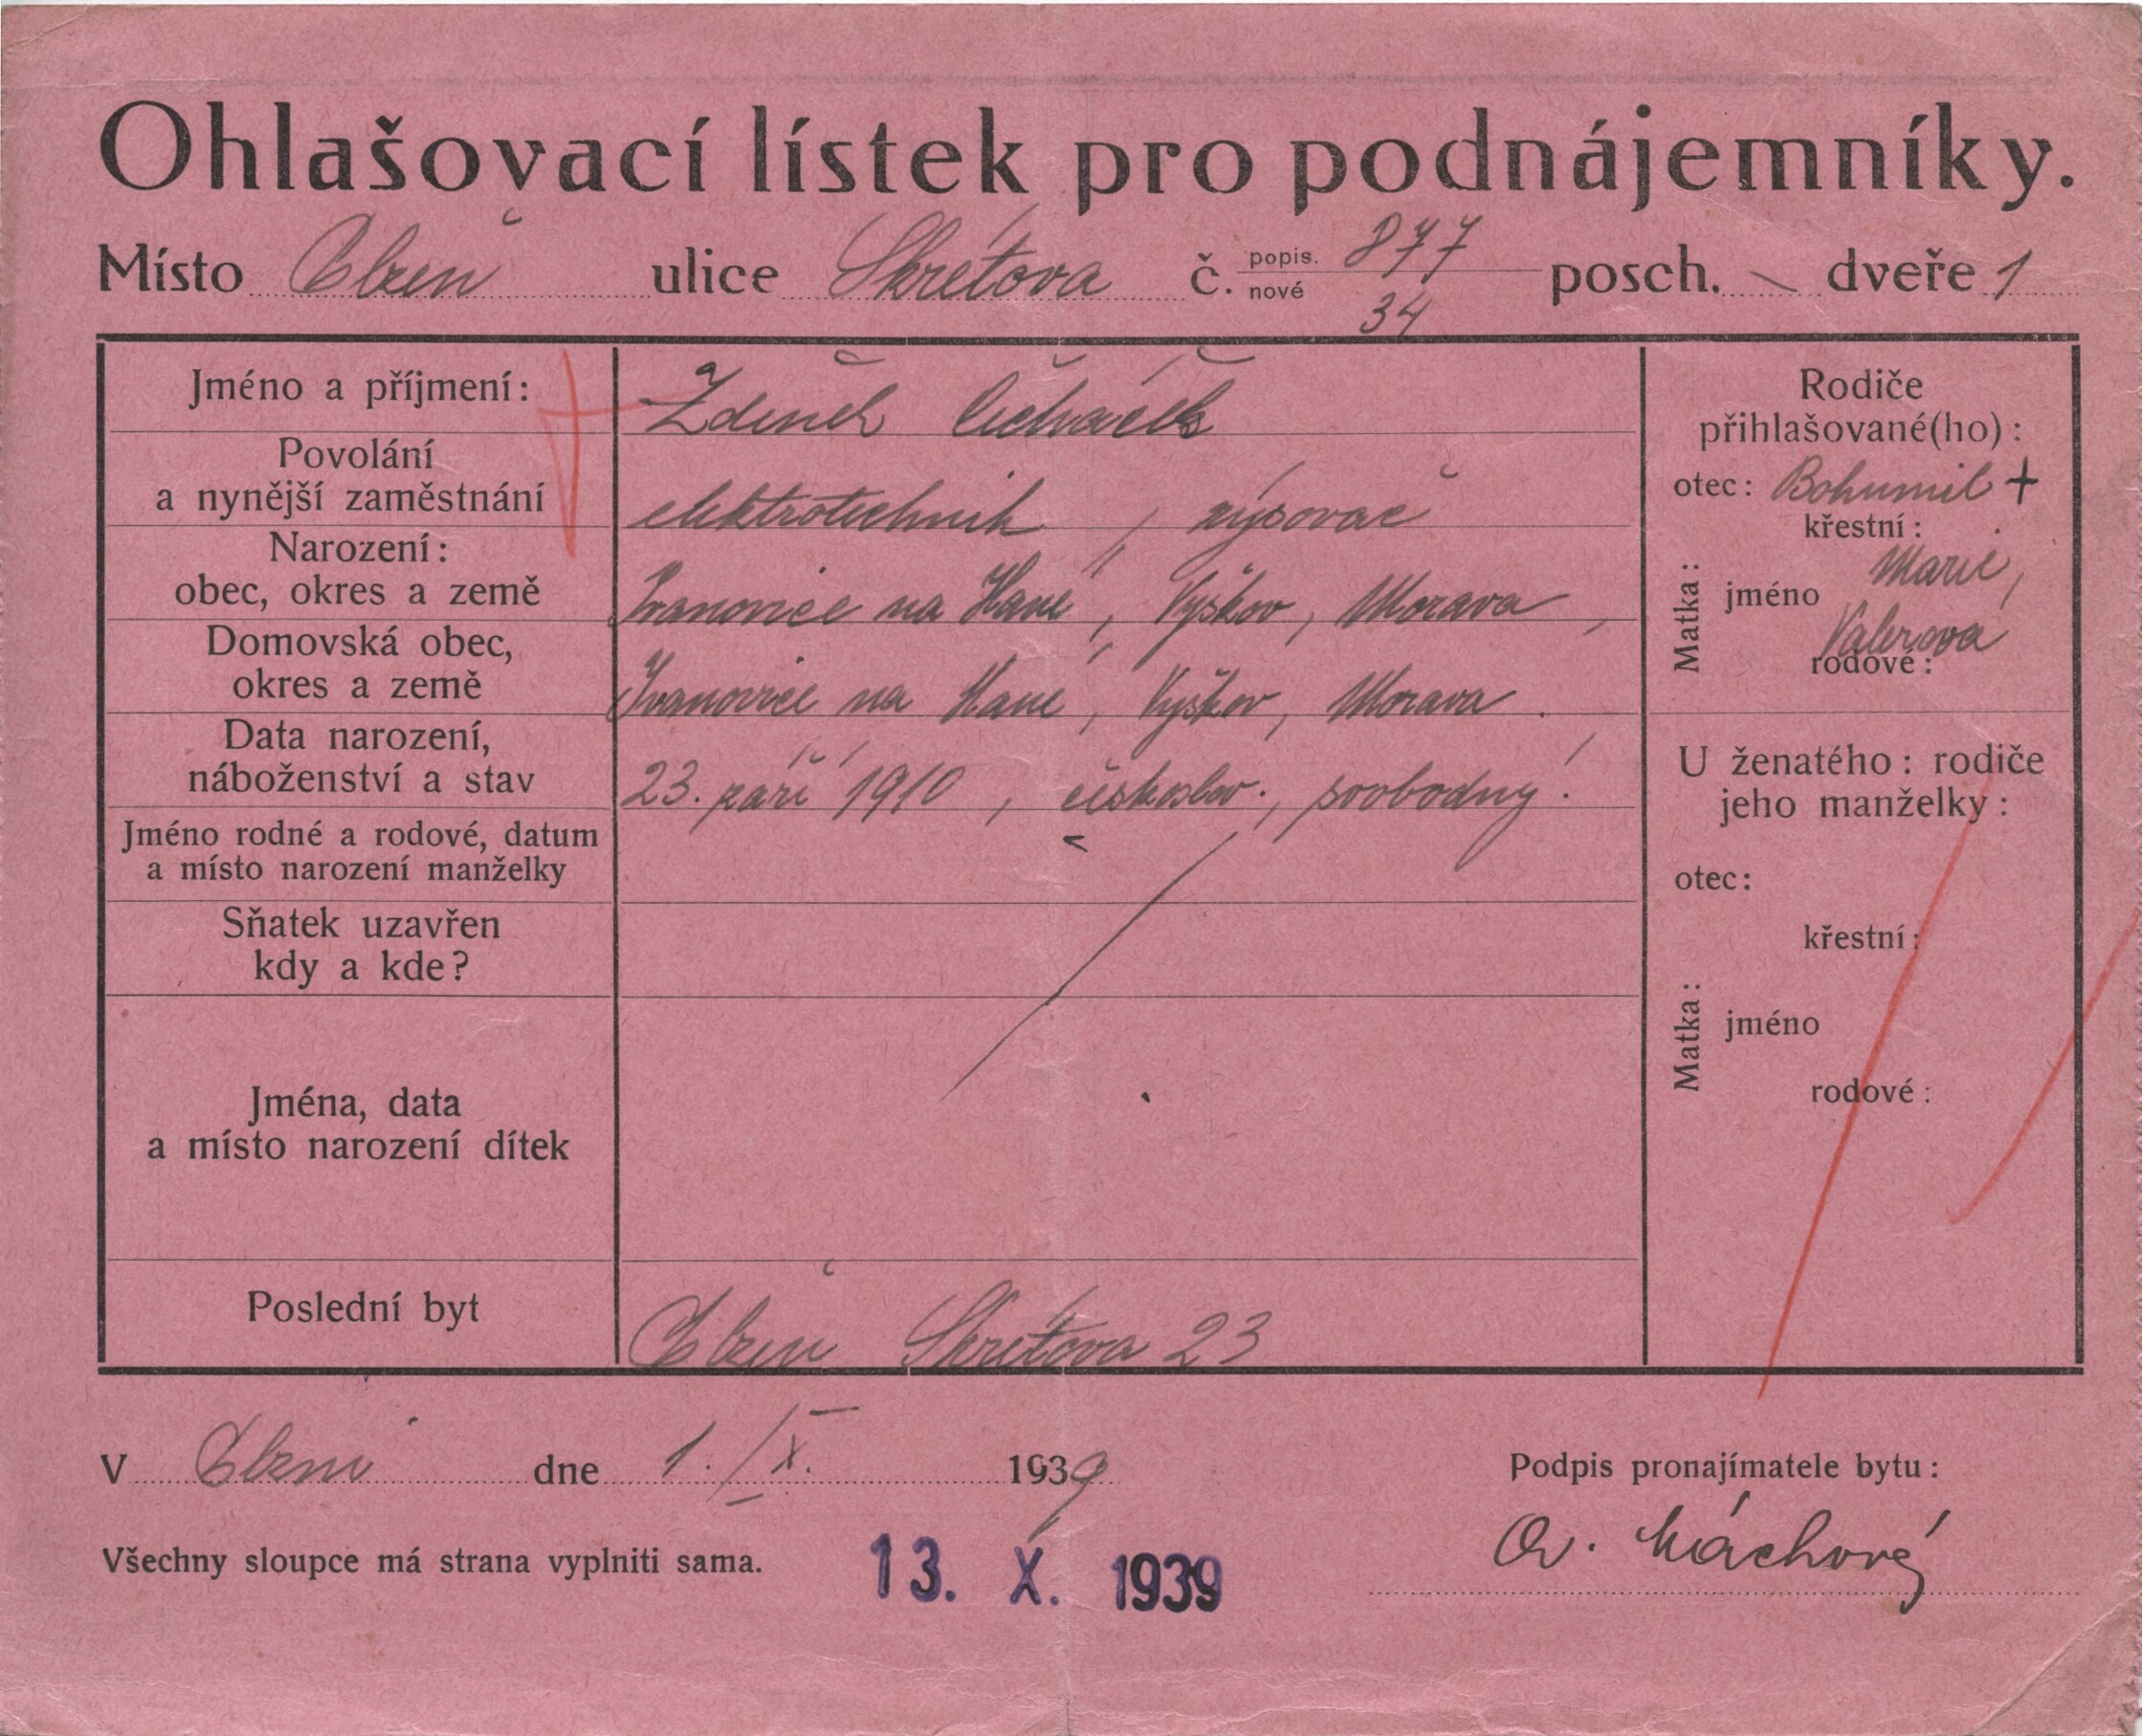 1. soap-pn_10024_cechacek-zdenek-1910_1939-10-01_1